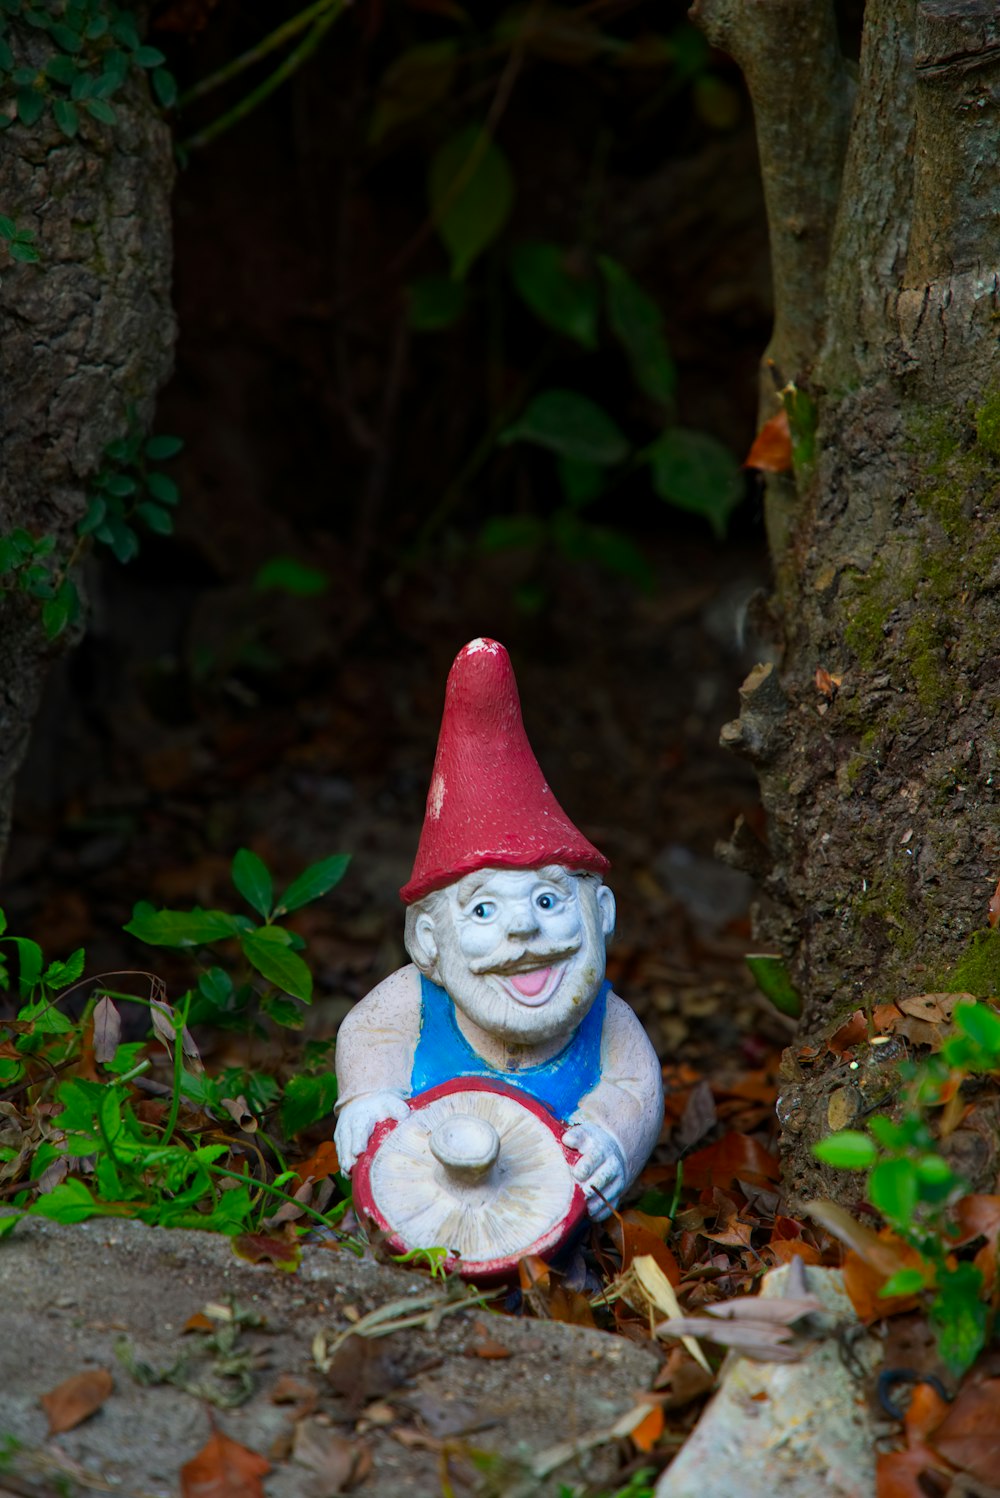 gnome ceramic figurine near green plant